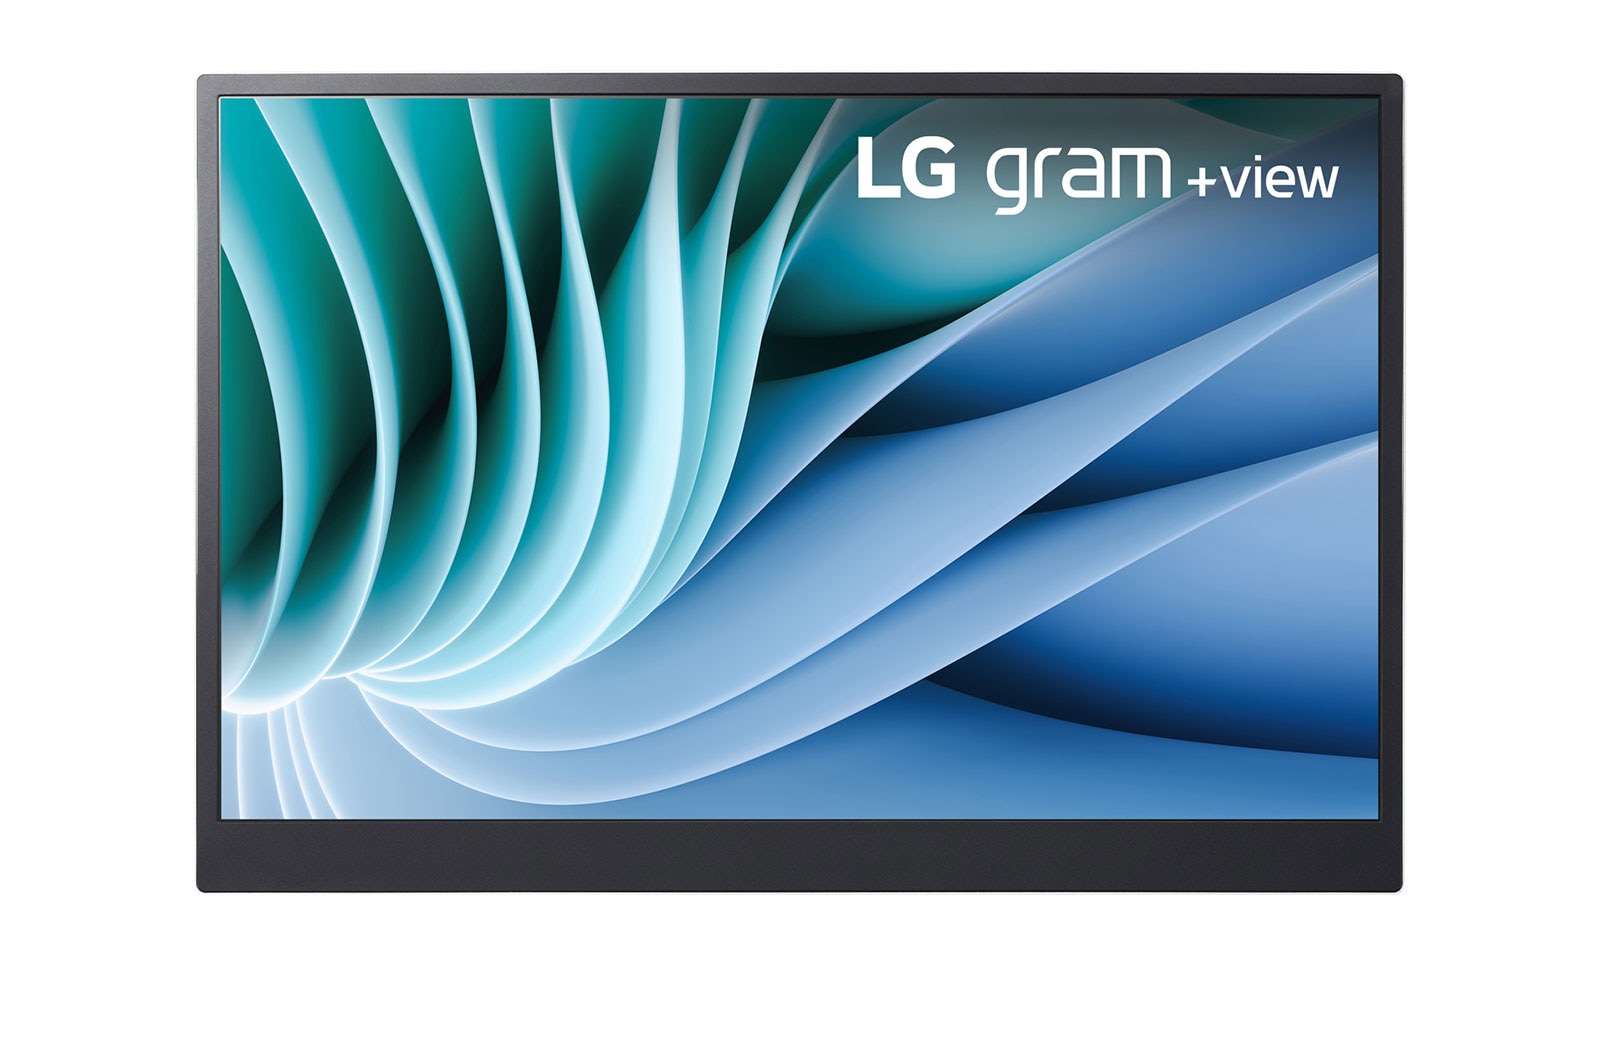 LG Moniteur portable LG gram +view | 16'' (40.6 cm) | IPS 16/10ème | Résolution WQXGA 2560 x 1600, LG 16MR70